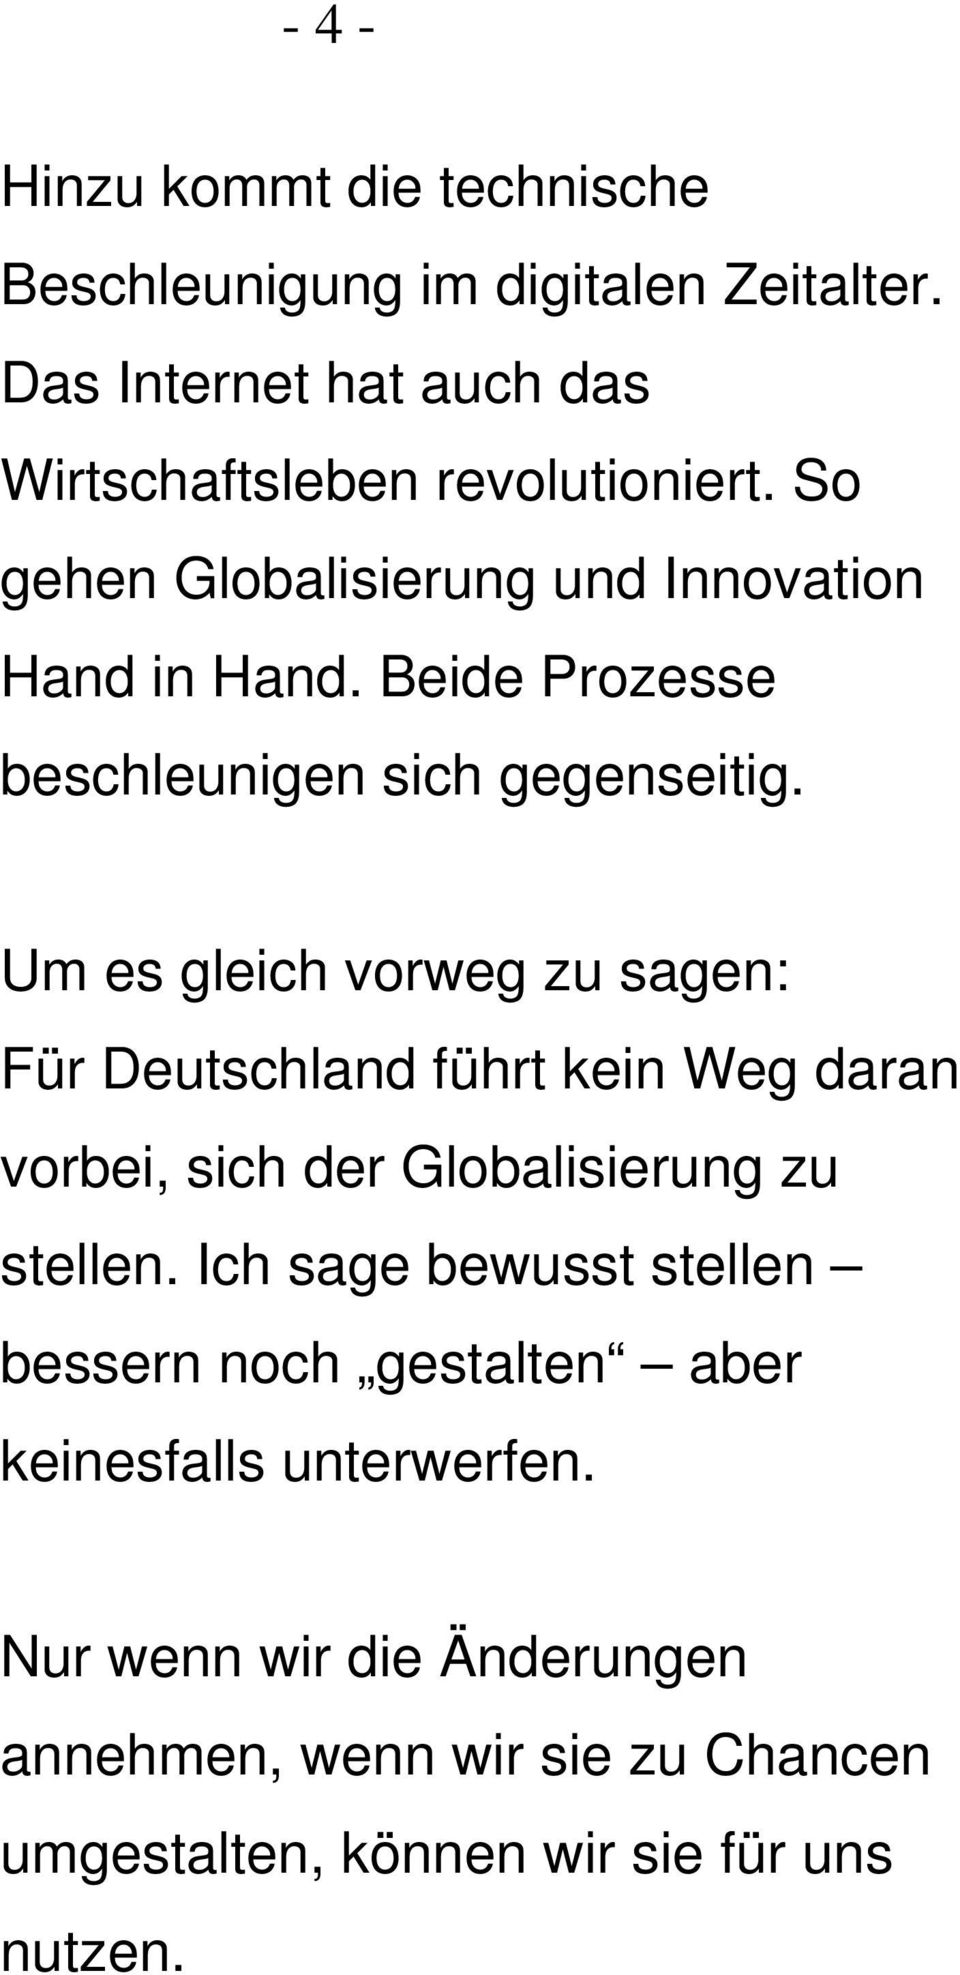 Um es gleich vorweg zu sagen: Für Deutschland führt kein Weg daran vorbei, sich der Globalisierung zu stellen.